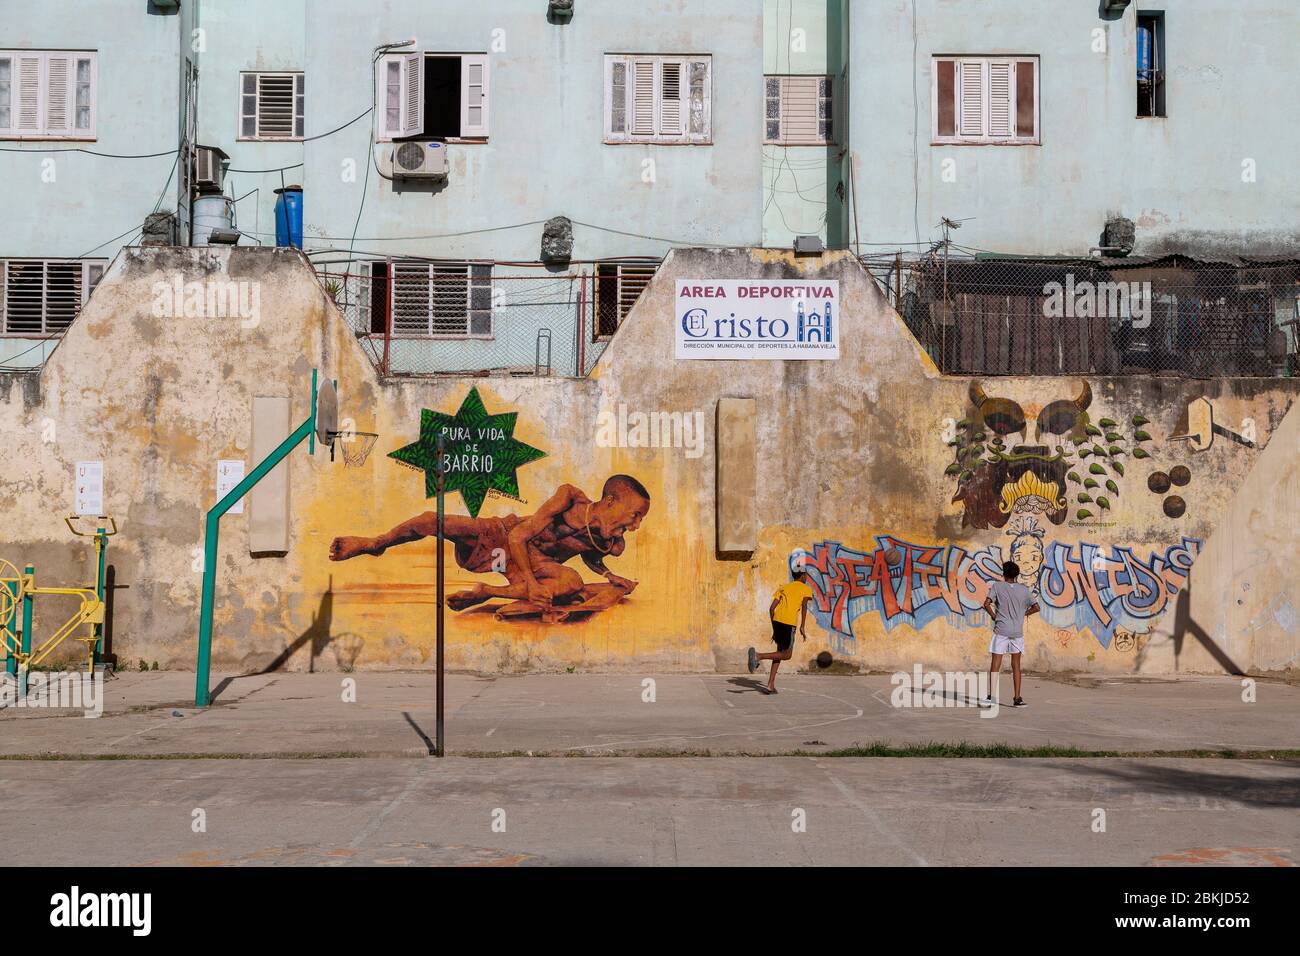 Cuba, l'Avana, il quartiere di Habana Vieja, classificato come Patrimonio dell'Umanità dall'UNESCO, plaza del Cristo, giovani che giocano a pallacanestro Foto Stock